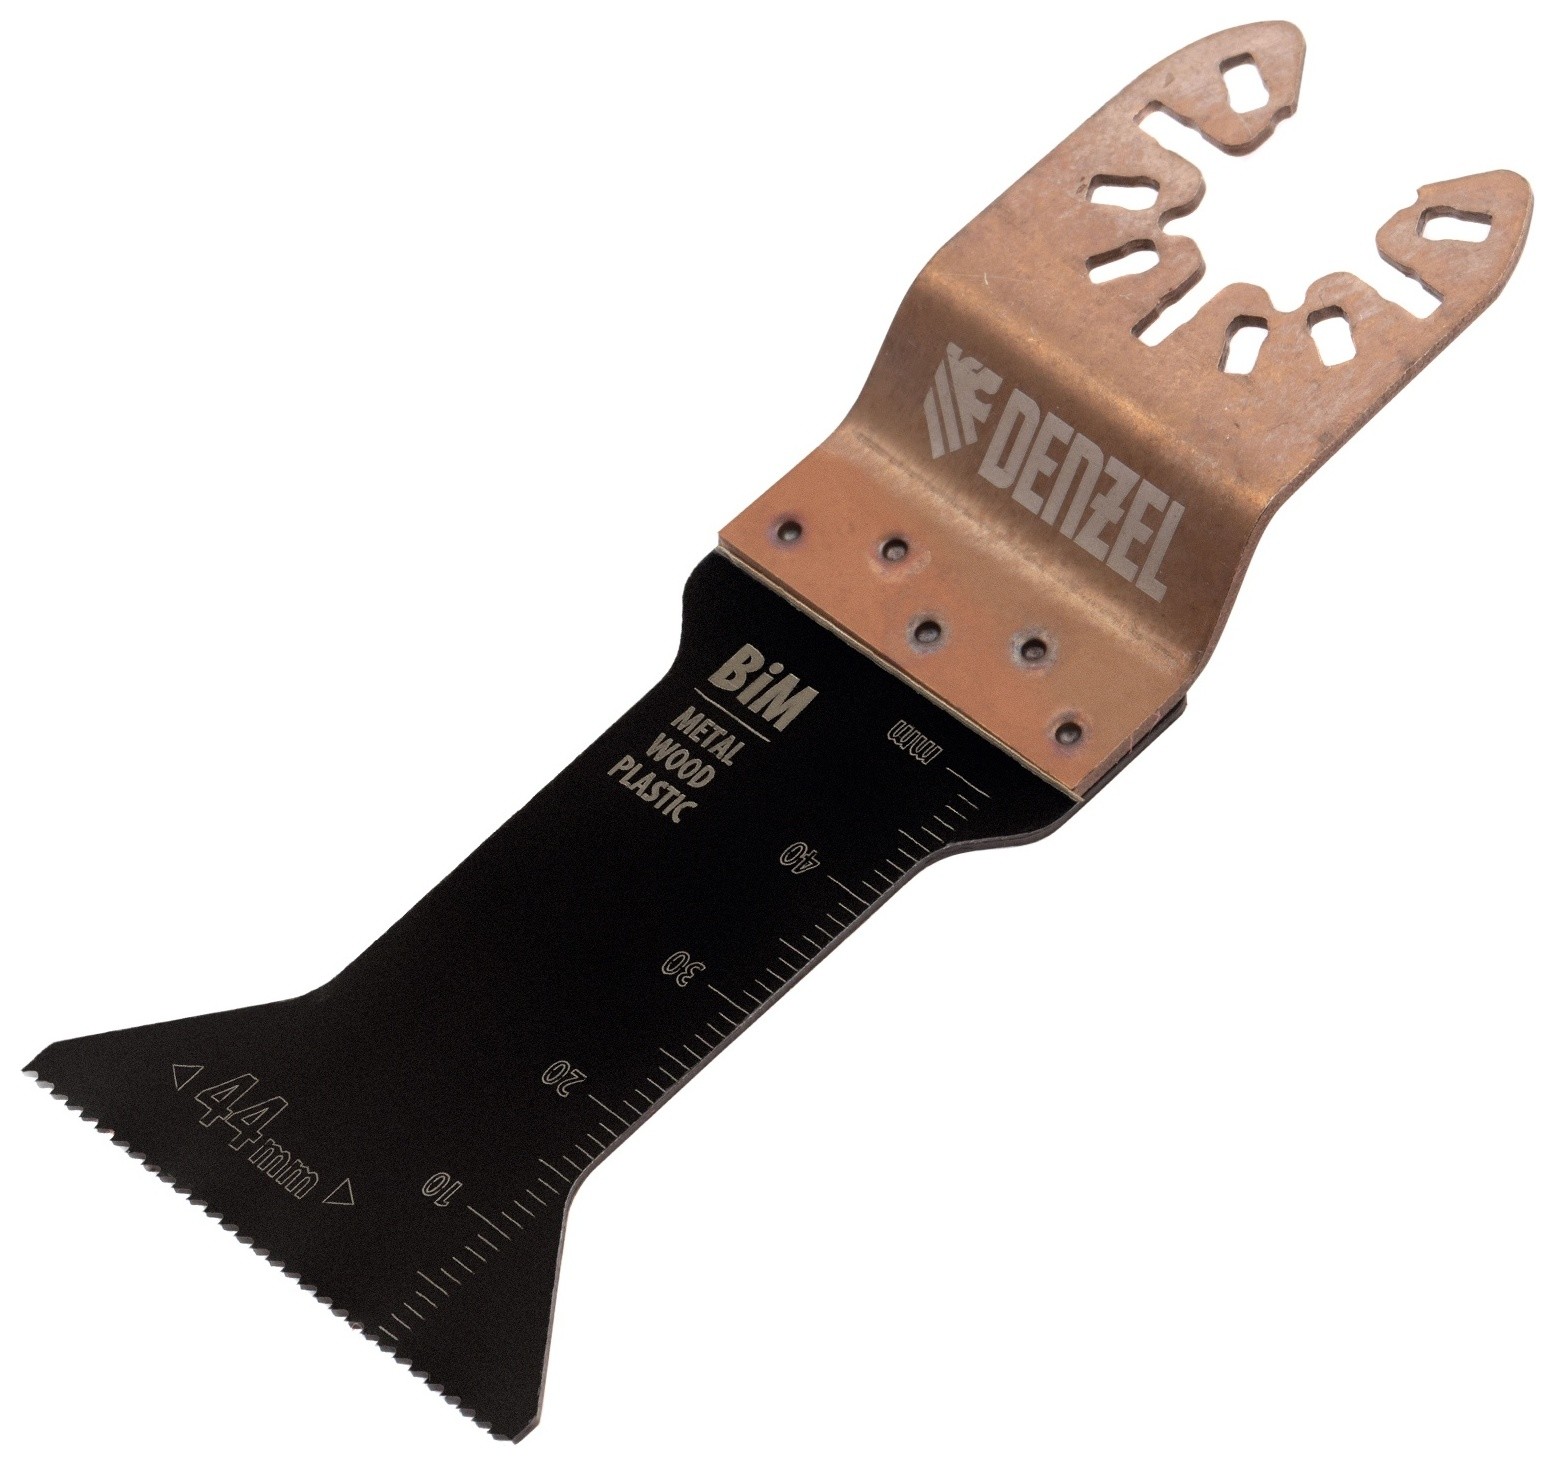 Насадка для МФИ режущая т-образная, Bim, по металлу, дереву, пластику, 44 X 1.4 мм, мелкий зуб